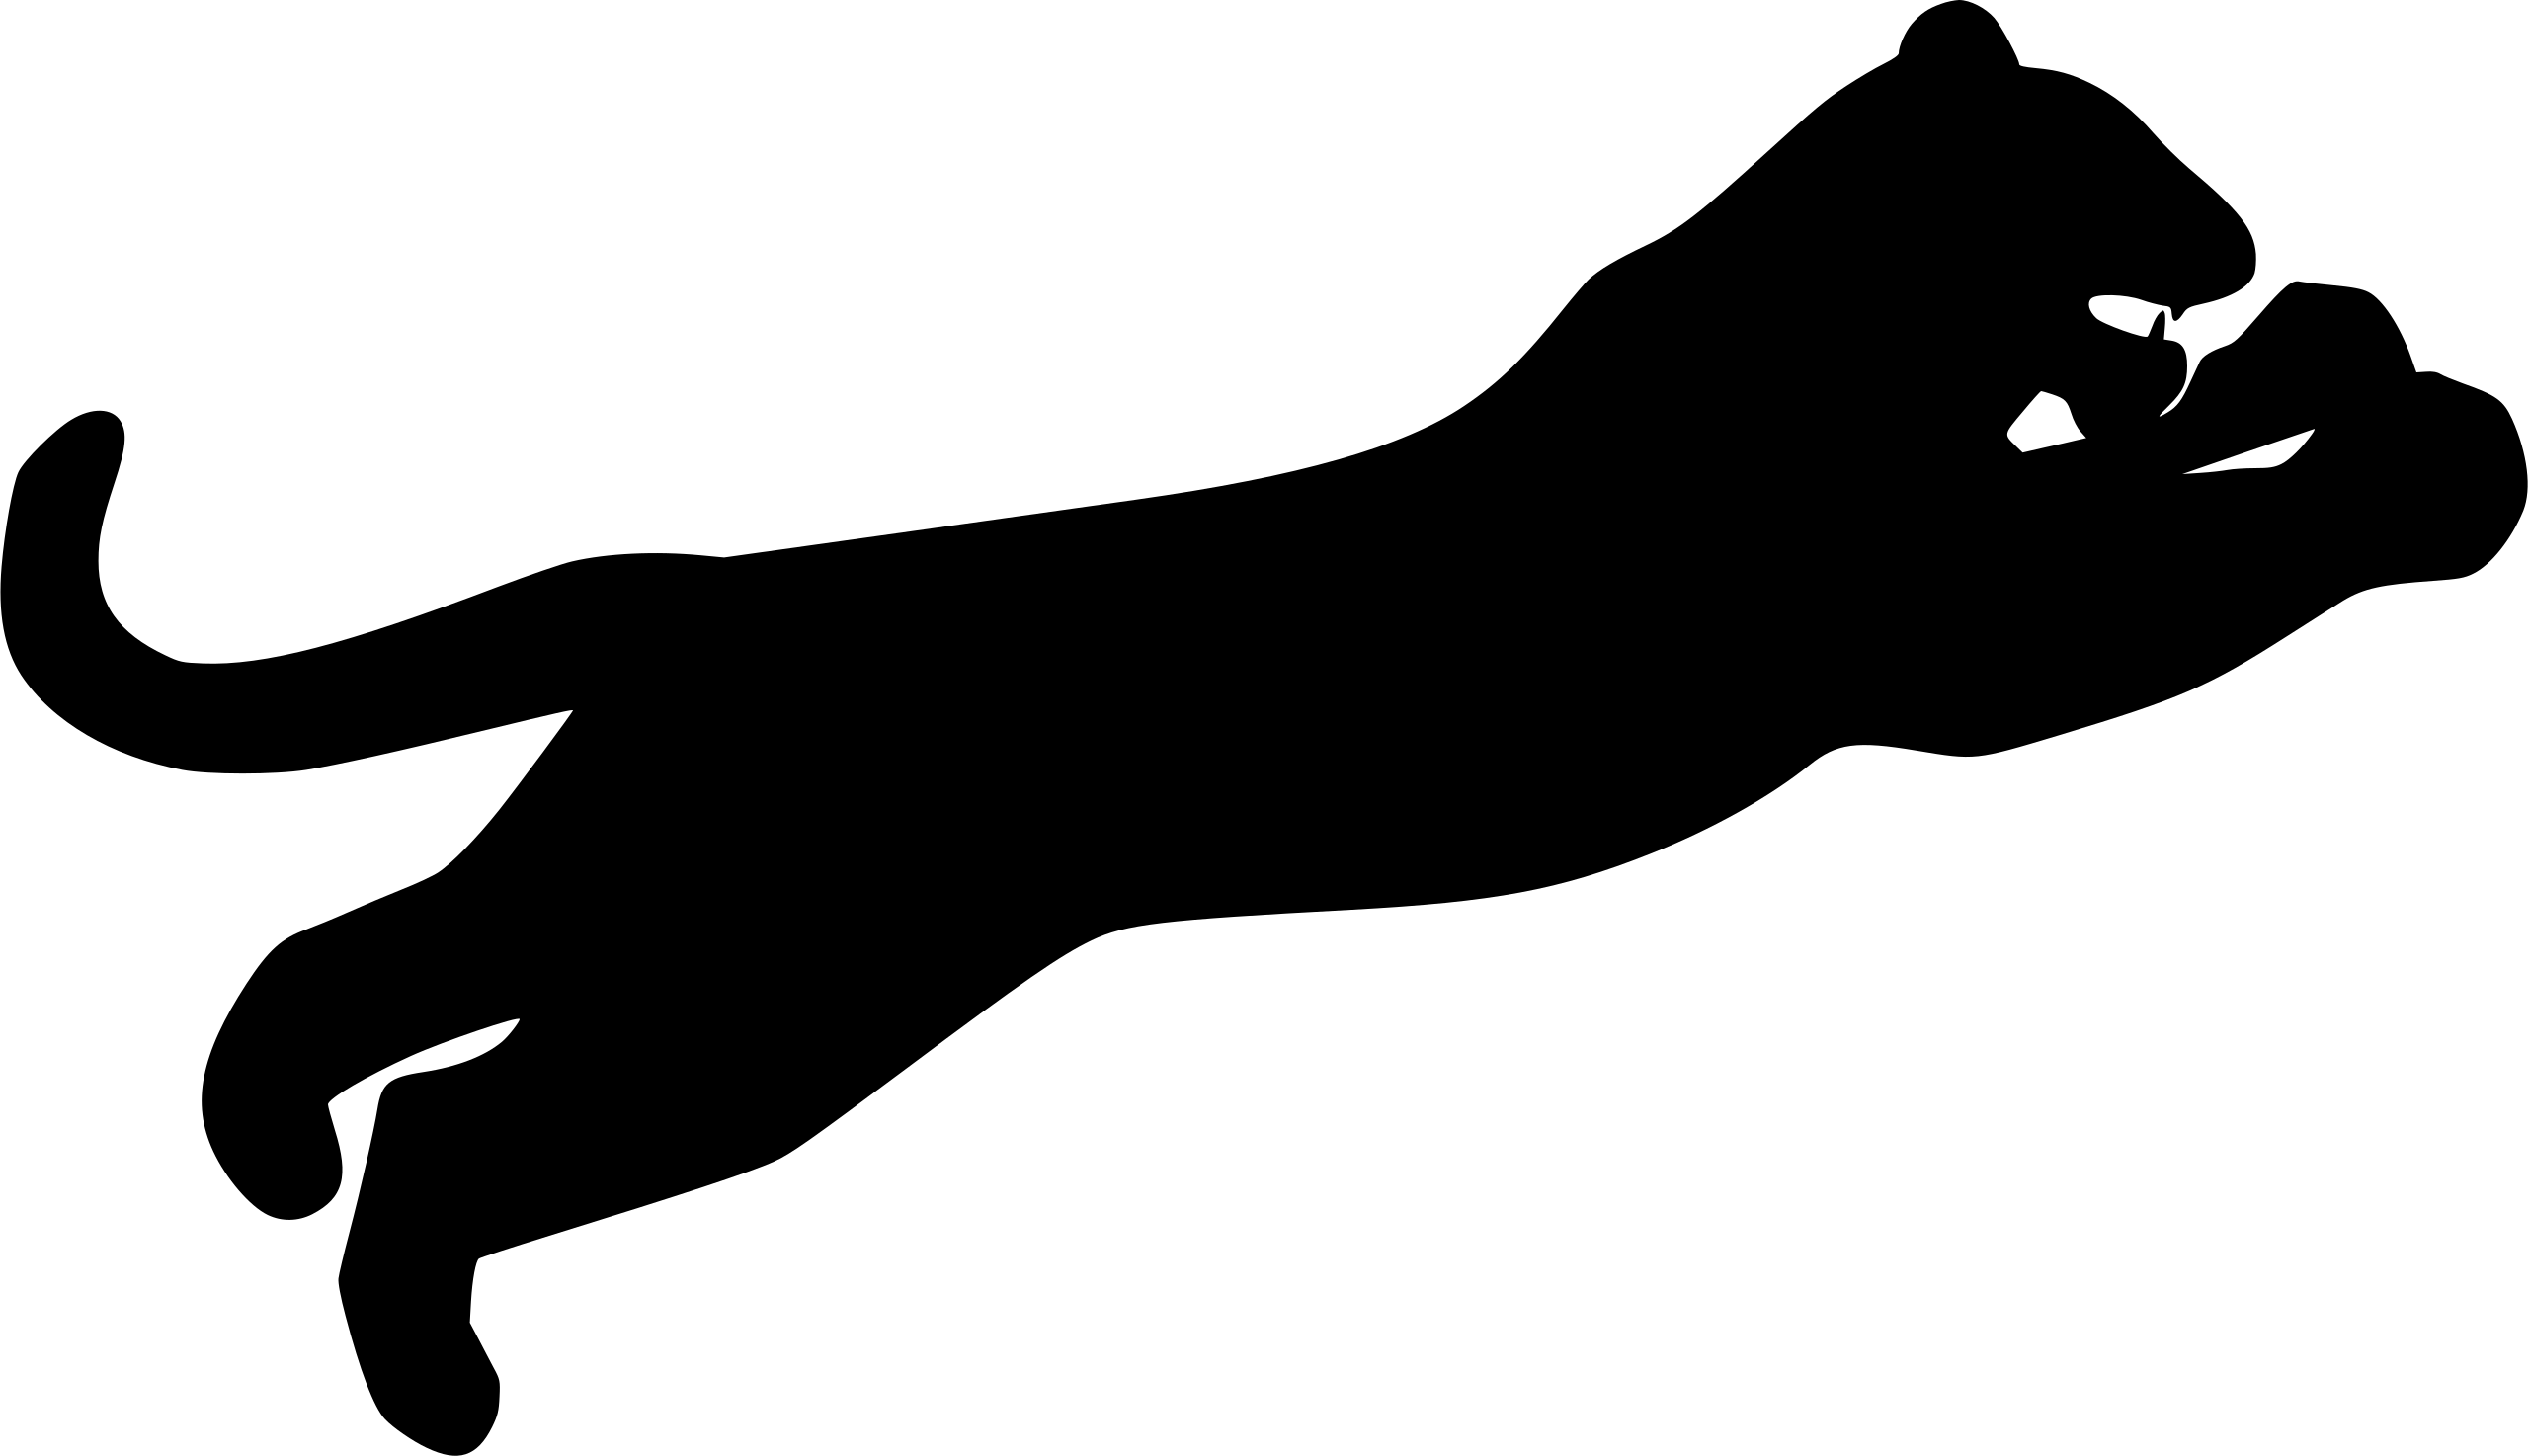 File:Leaping puma icon - black.svg - Wikipedia